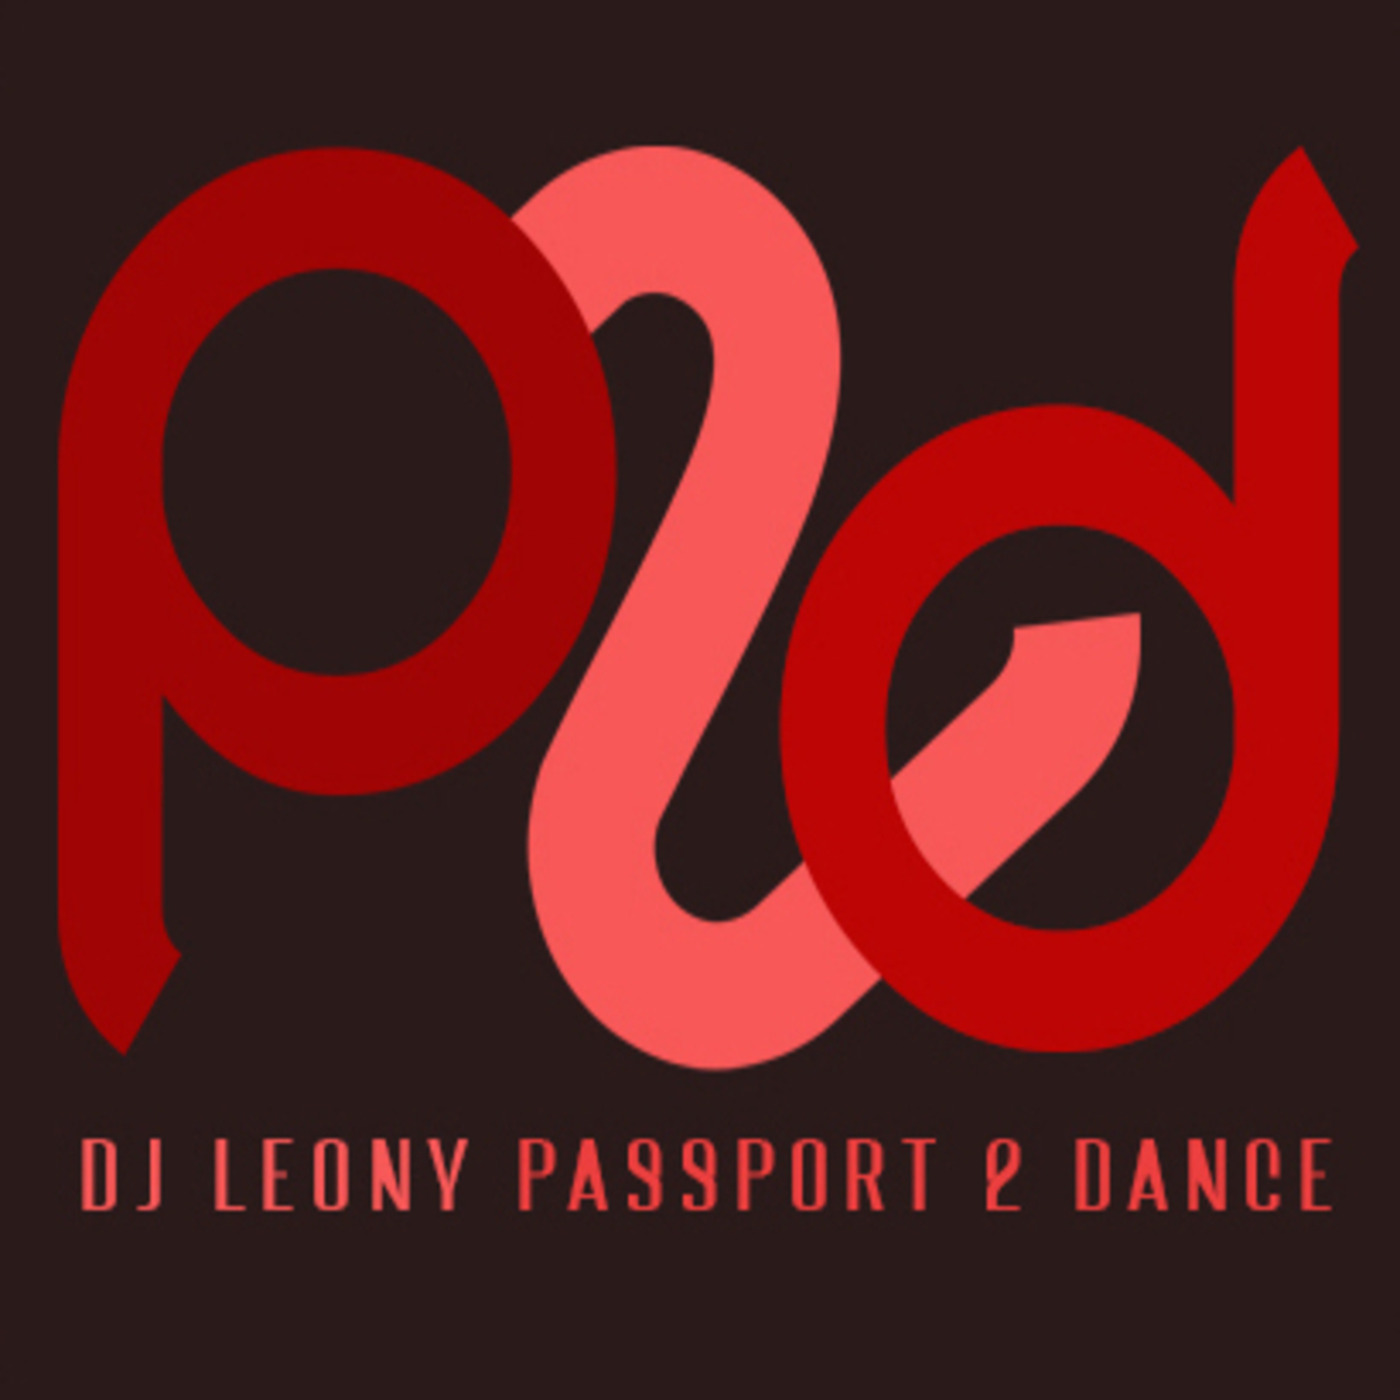 Episode 32767: djleony pres. Passport 2 Dance 031922